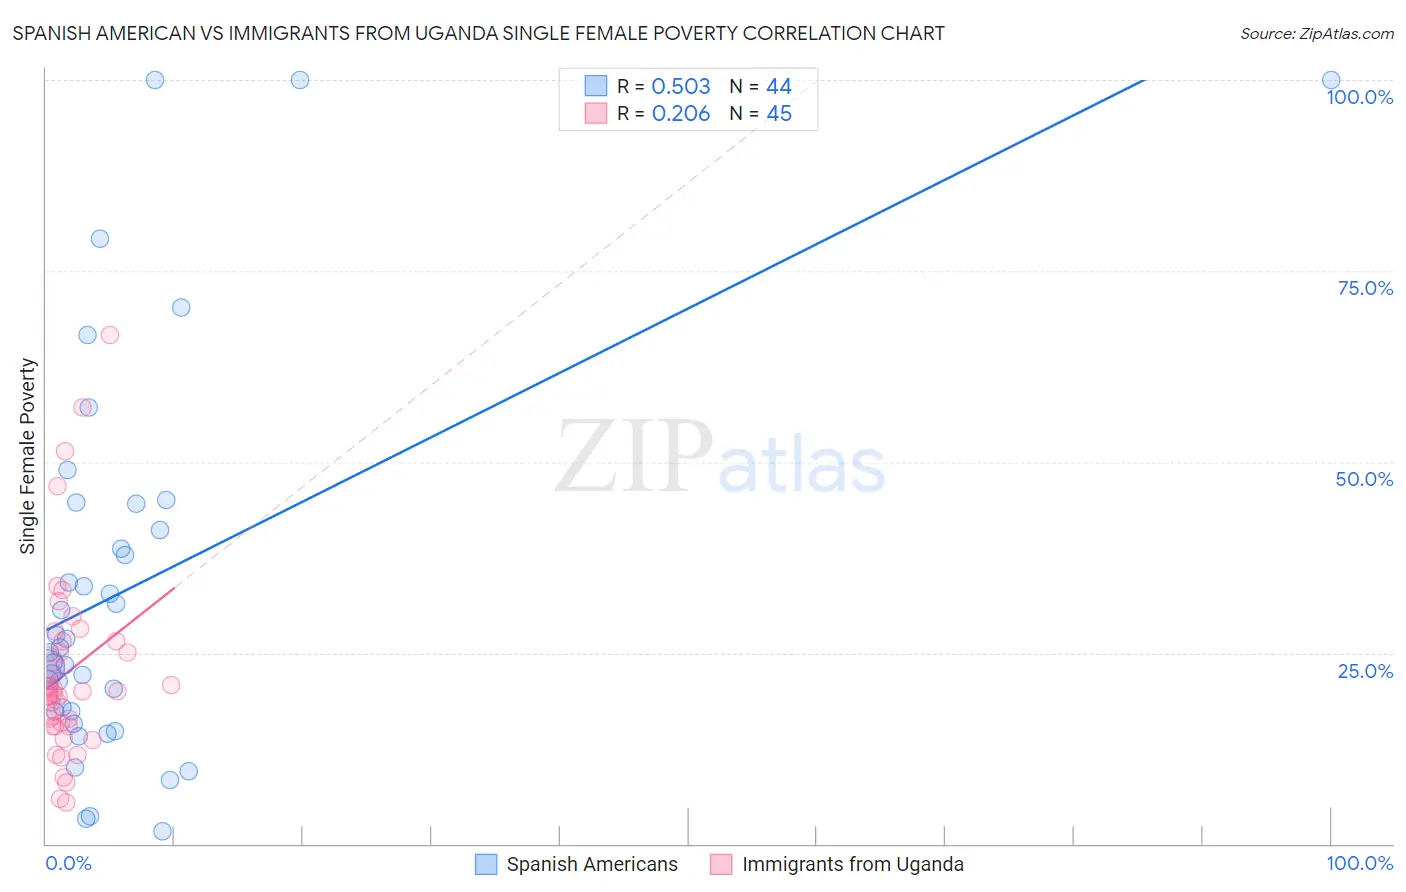 Spanish American vs Immigrants from Uganda Single Female Poverty